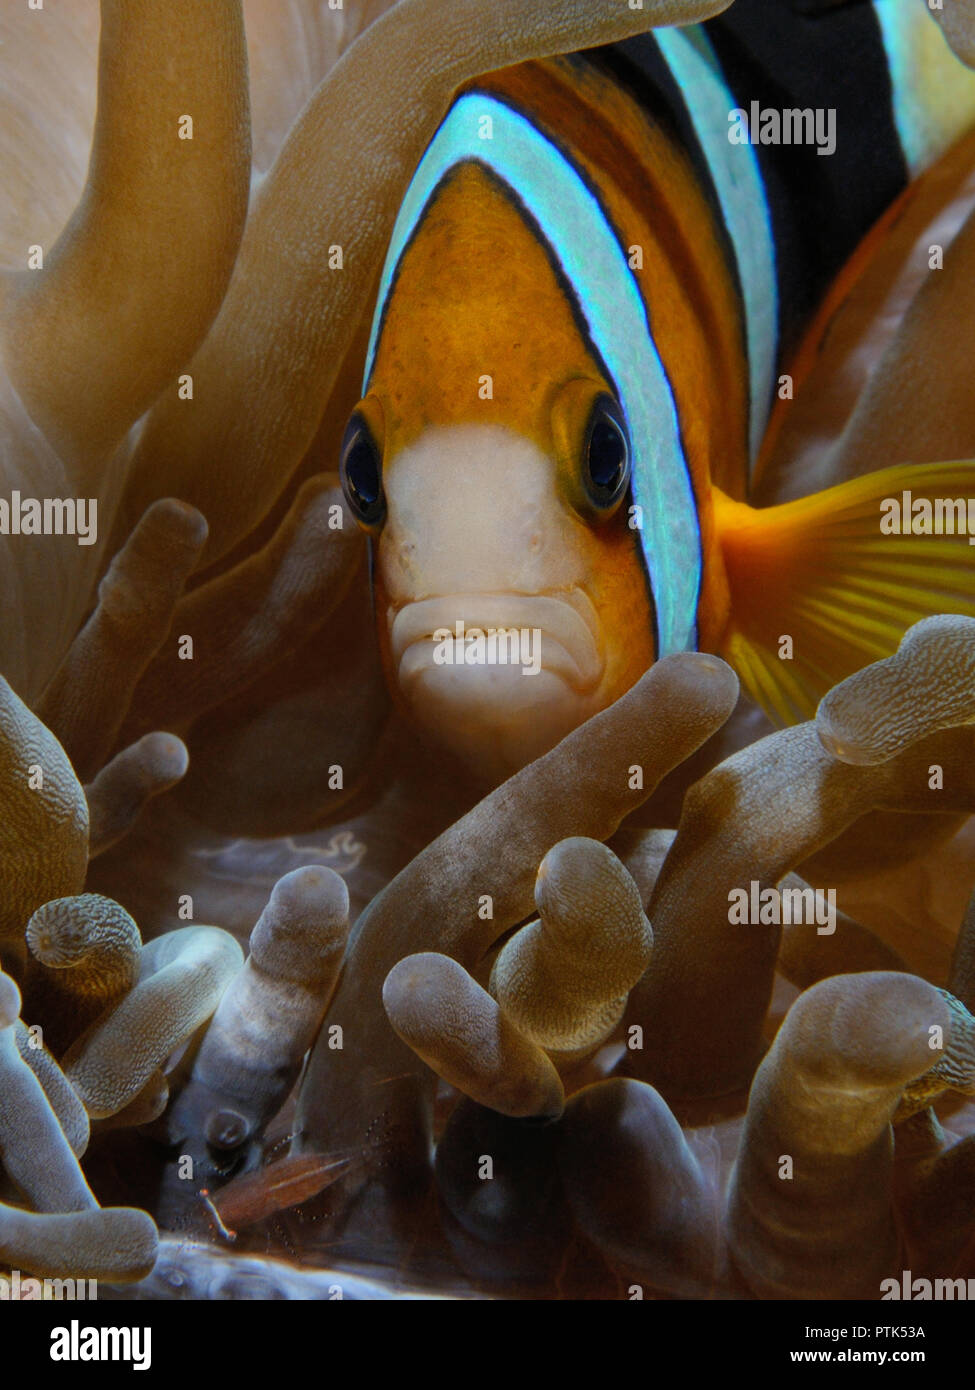 Nemo Fisch (Yellowtail Clownfisch (Eng) - amphiprion Clarkii (Lat)) und Garnelen leben innerhalb einer Anemone, Puerto Galera, Philippinen Stockfoto